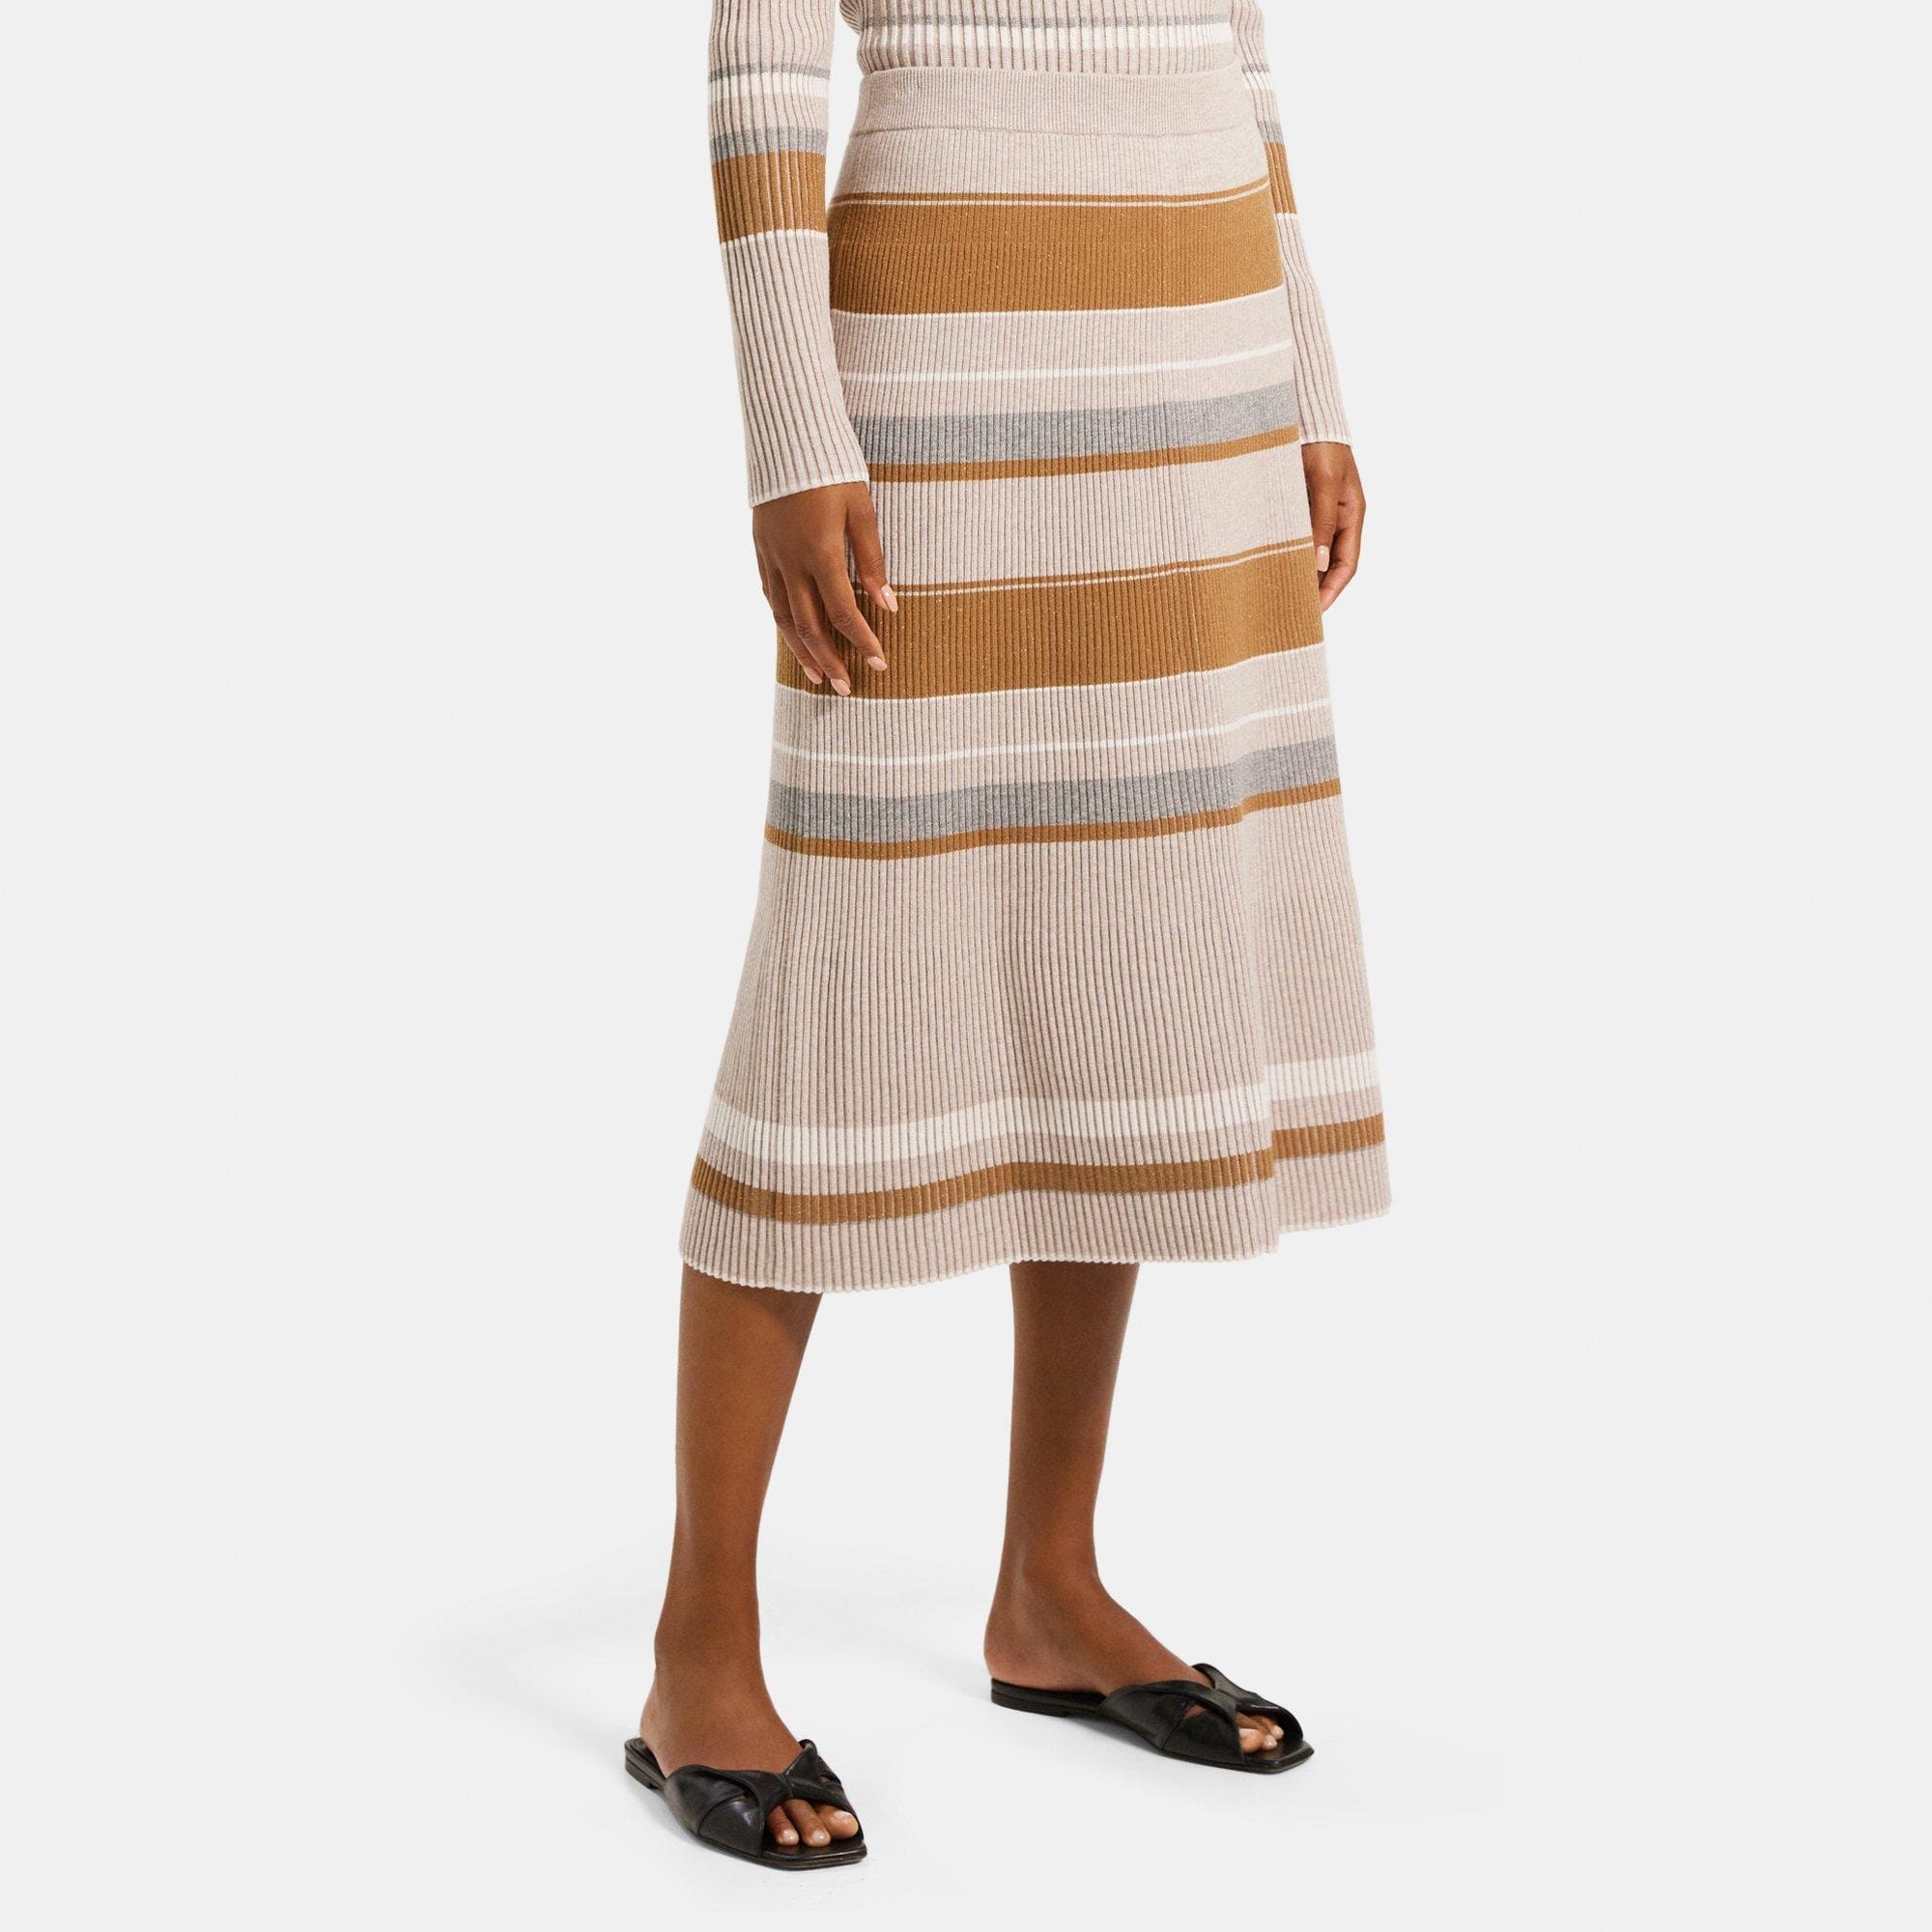 띠어리 Theory Pencil Skirt in Striped Stretch Viscose Knit,CAMEL MULTI